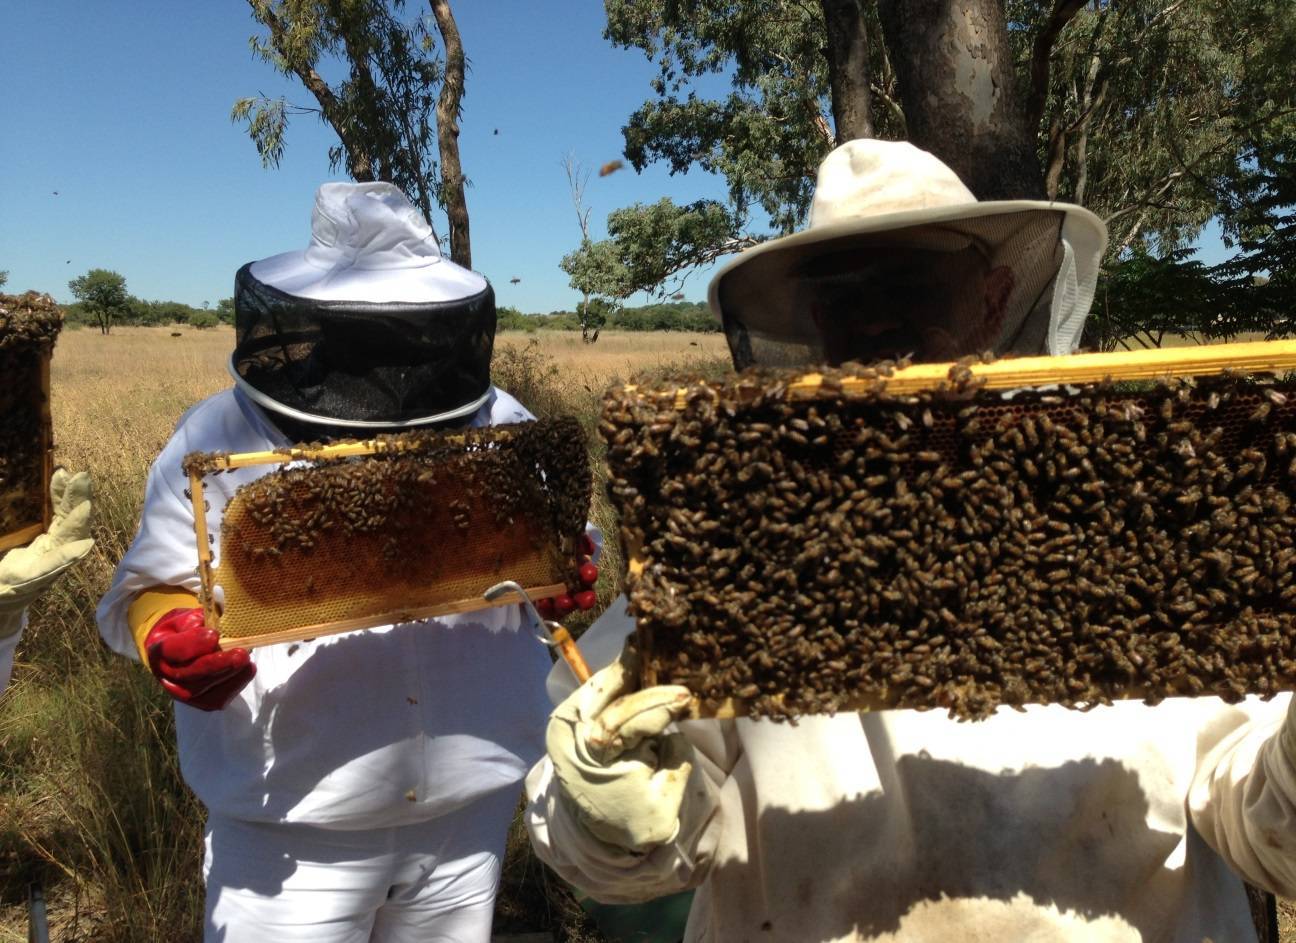 Пчеловодство как бизнес: выгодно ли этим заниматься, подробный план развития пасеки, отзывы предпринимателей и прочее